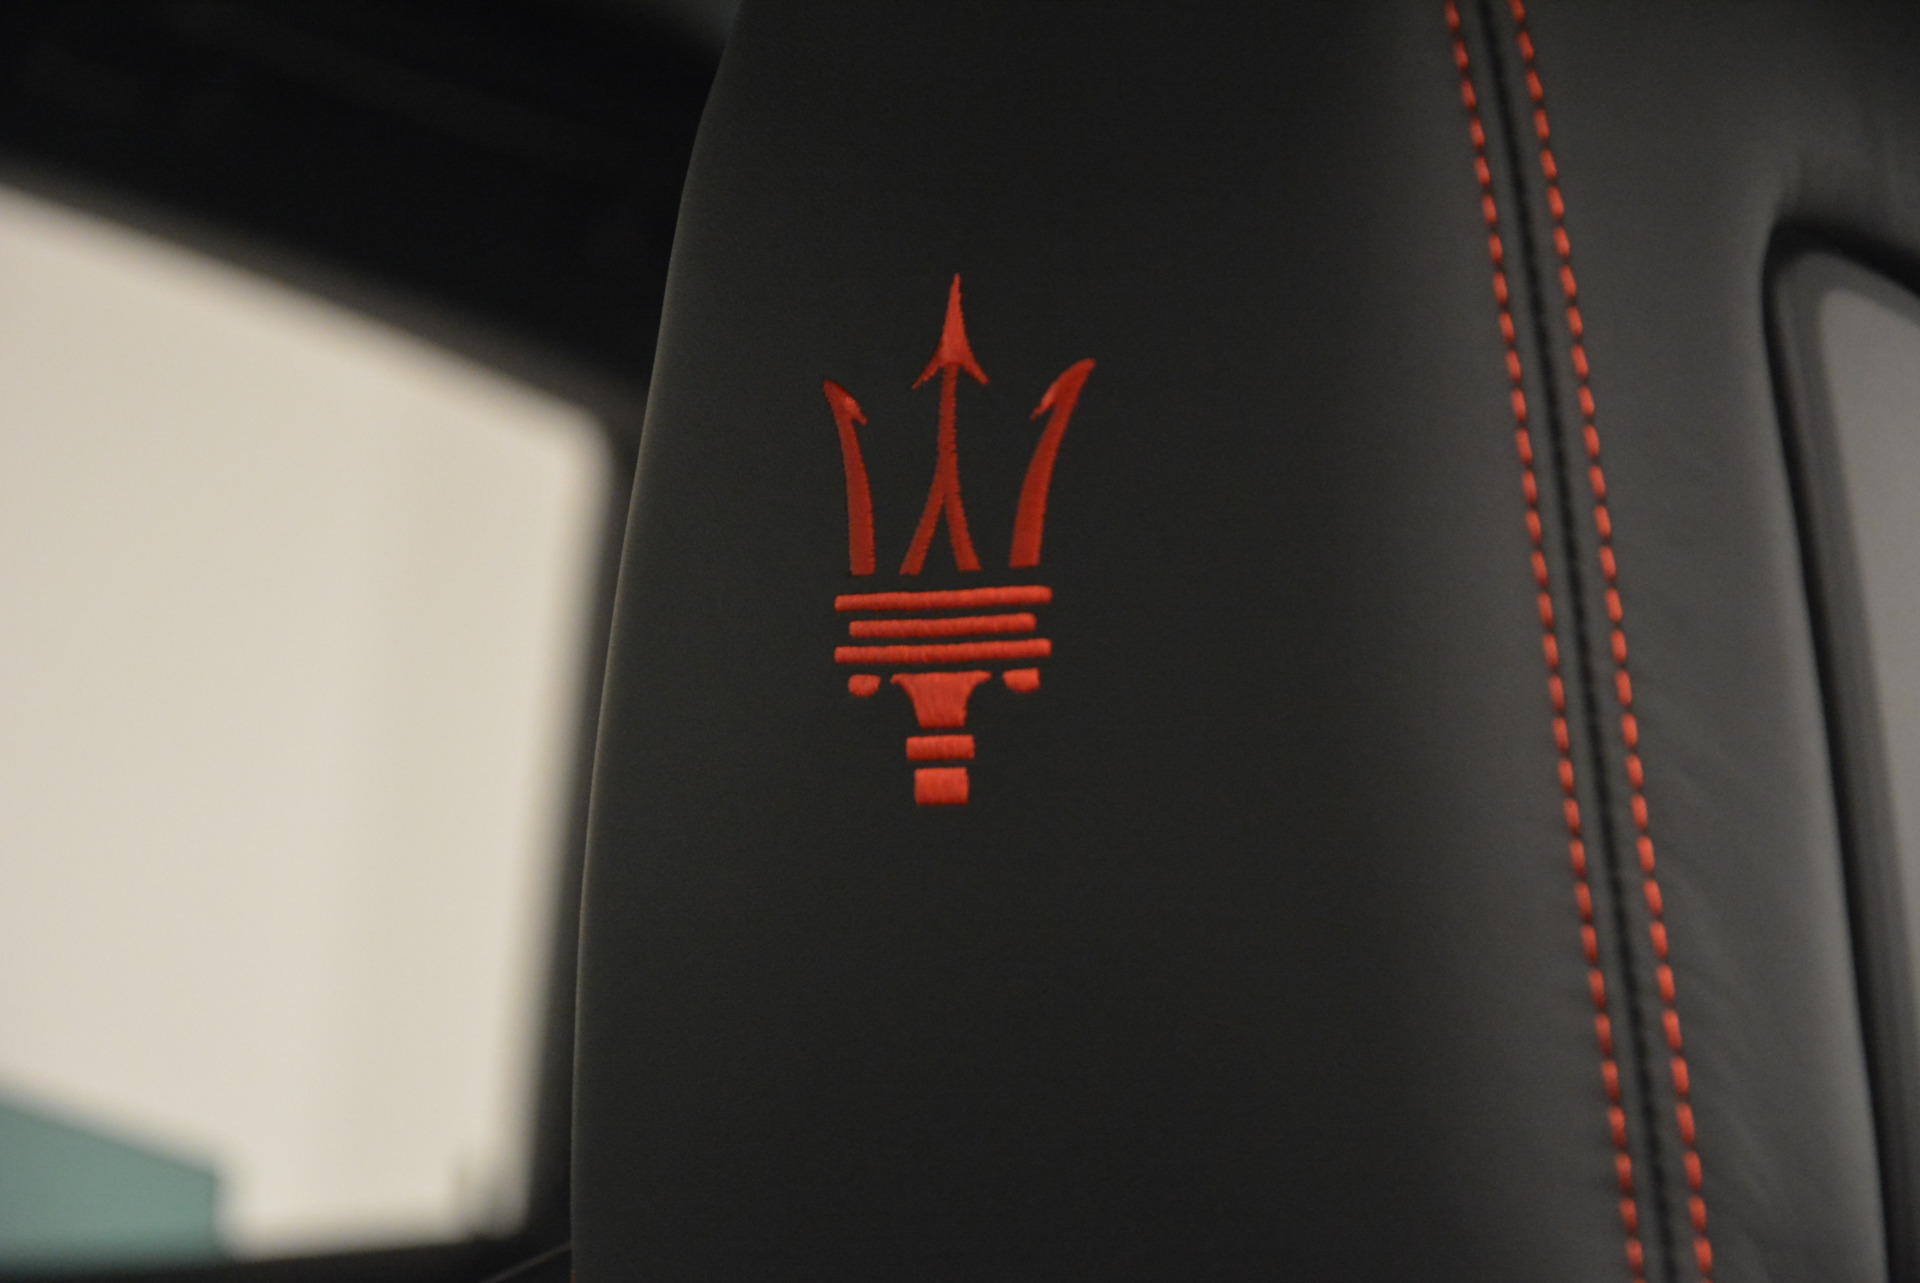 New 2017 Maserati Levante S